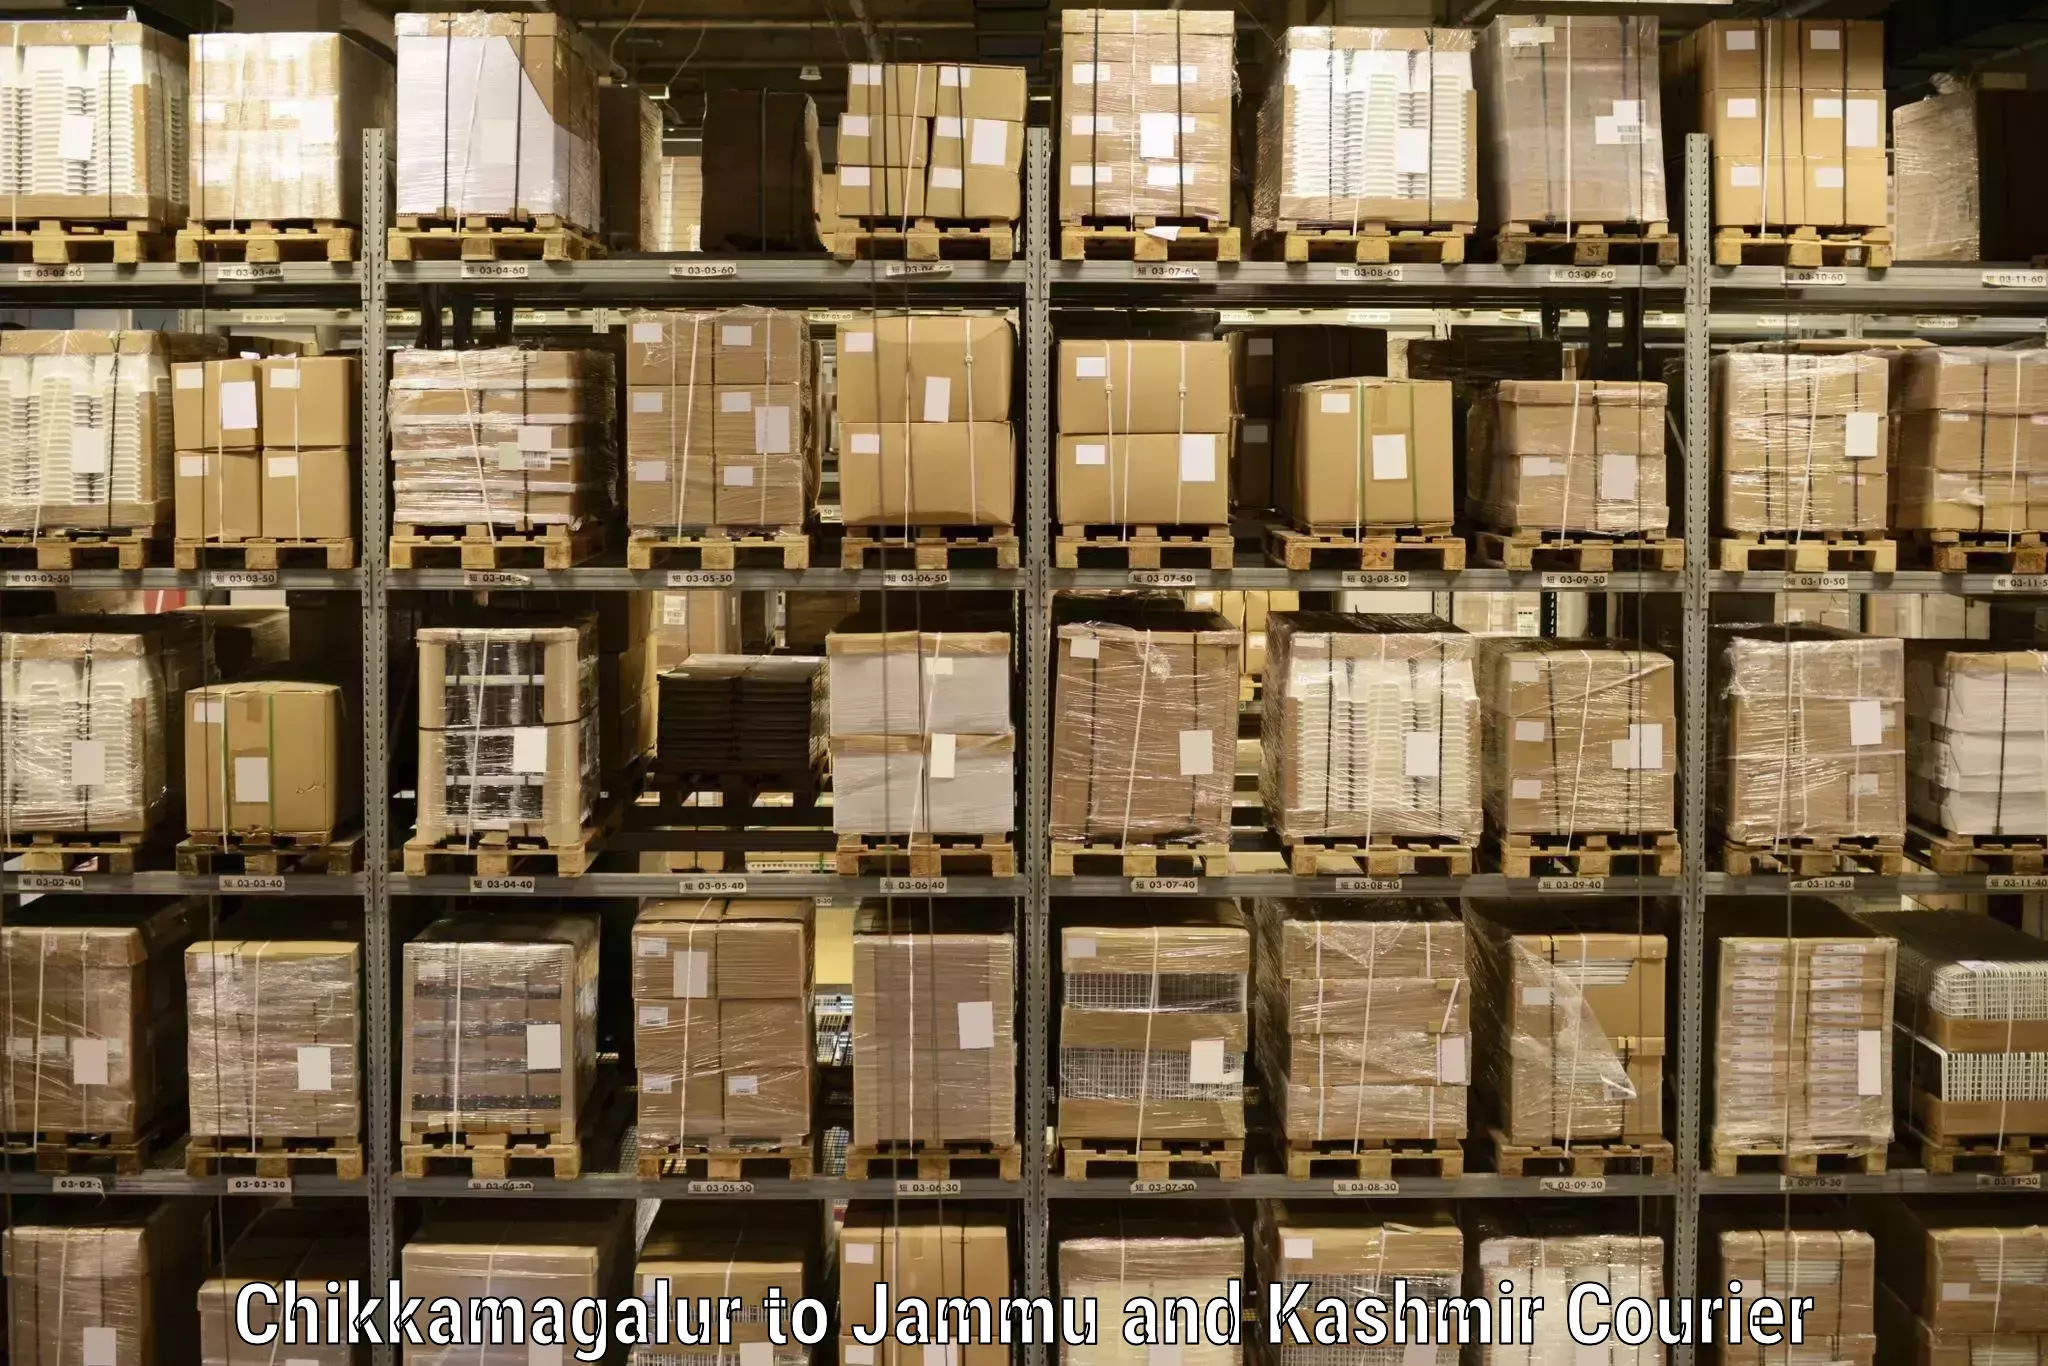 High-capacity shipping options Chikkamagalur to Anantnag